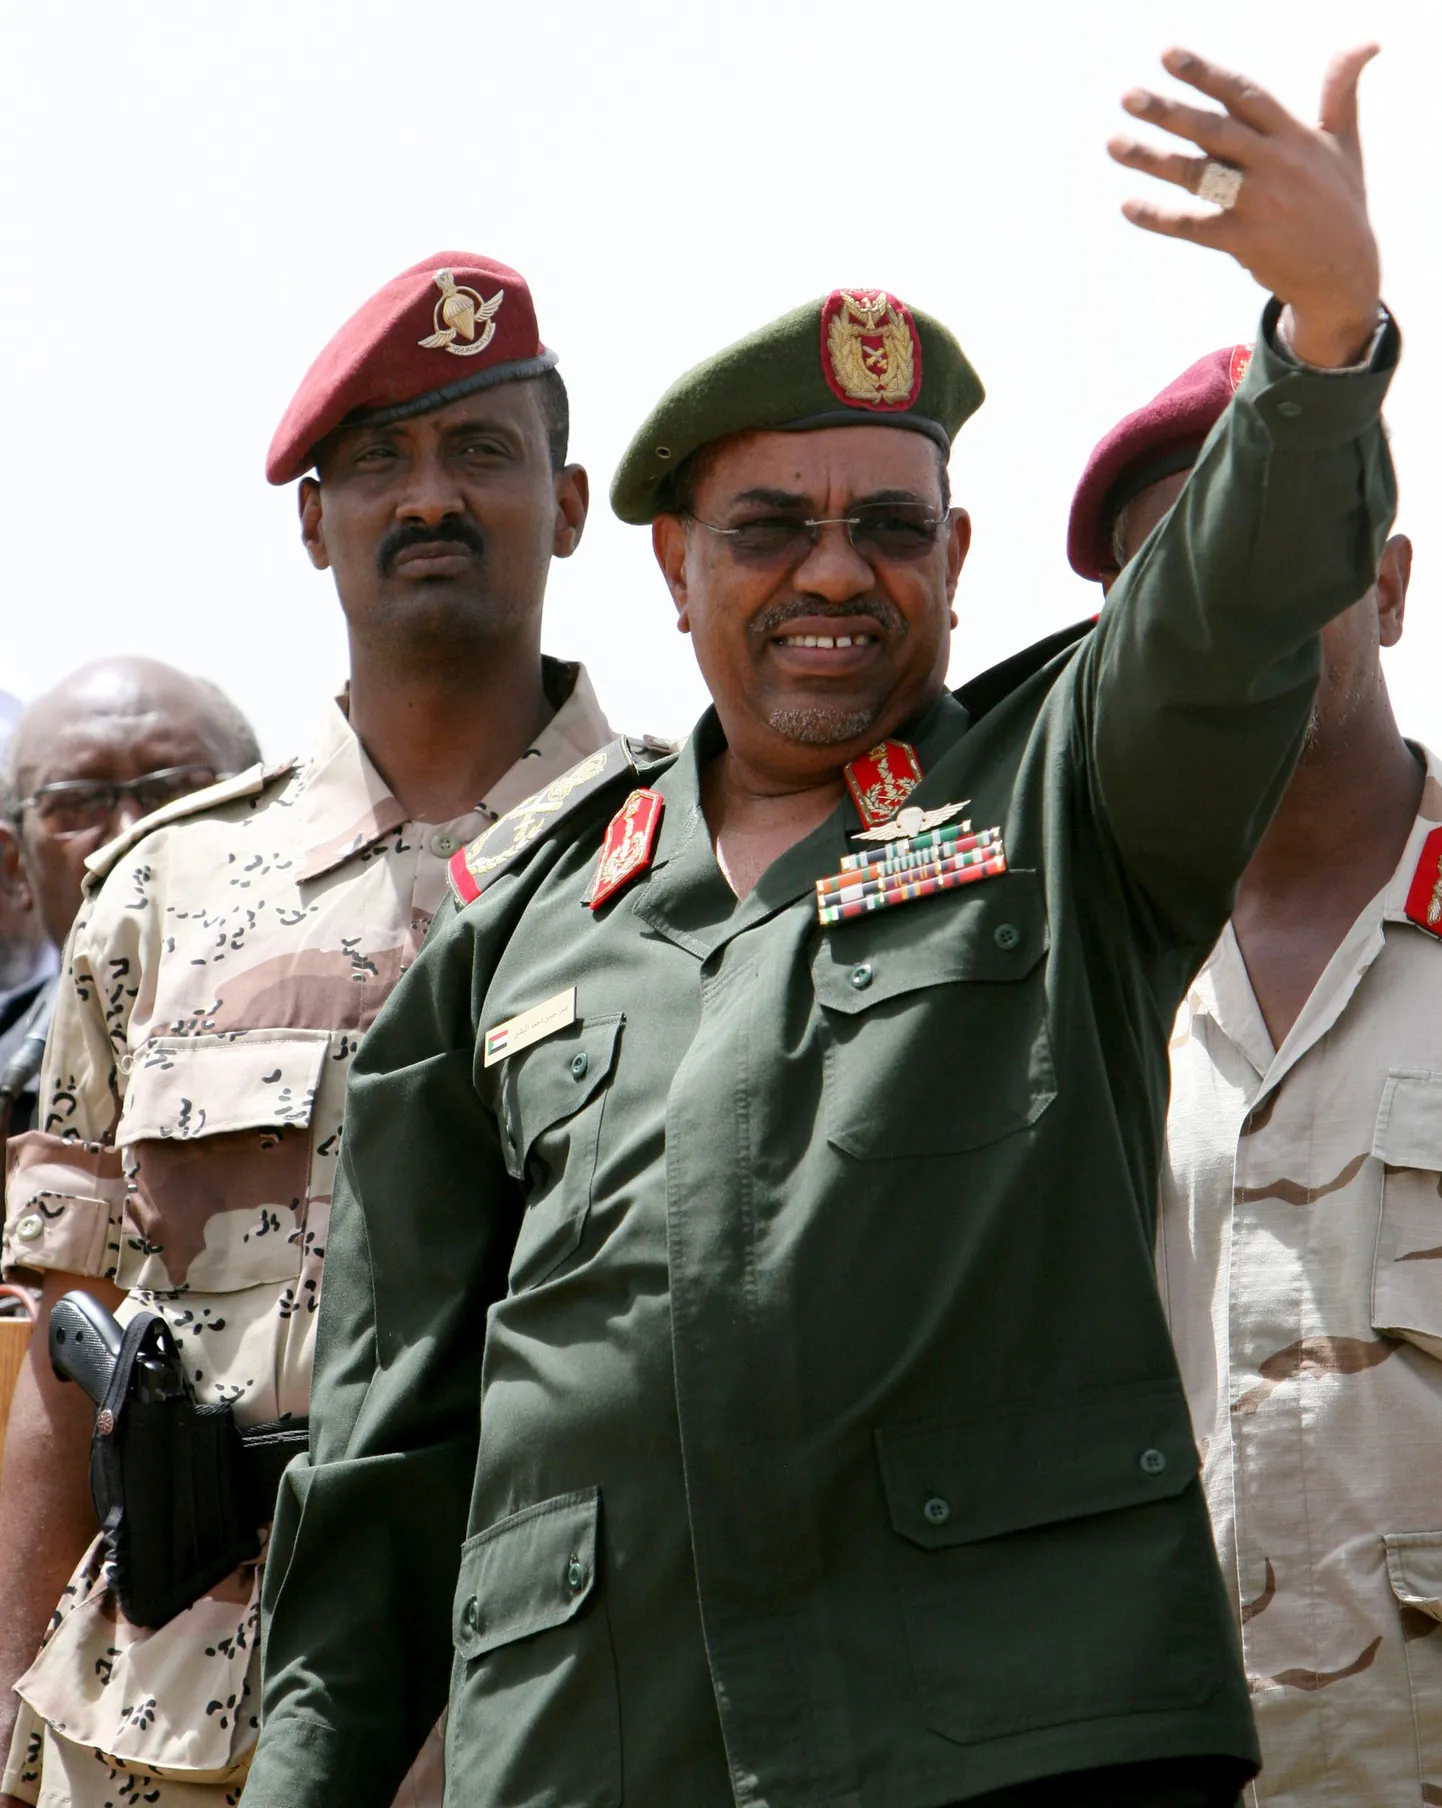 Sudaani president Omar Hassan al-Bashir sõjaväe peakorteris Khartoumis.